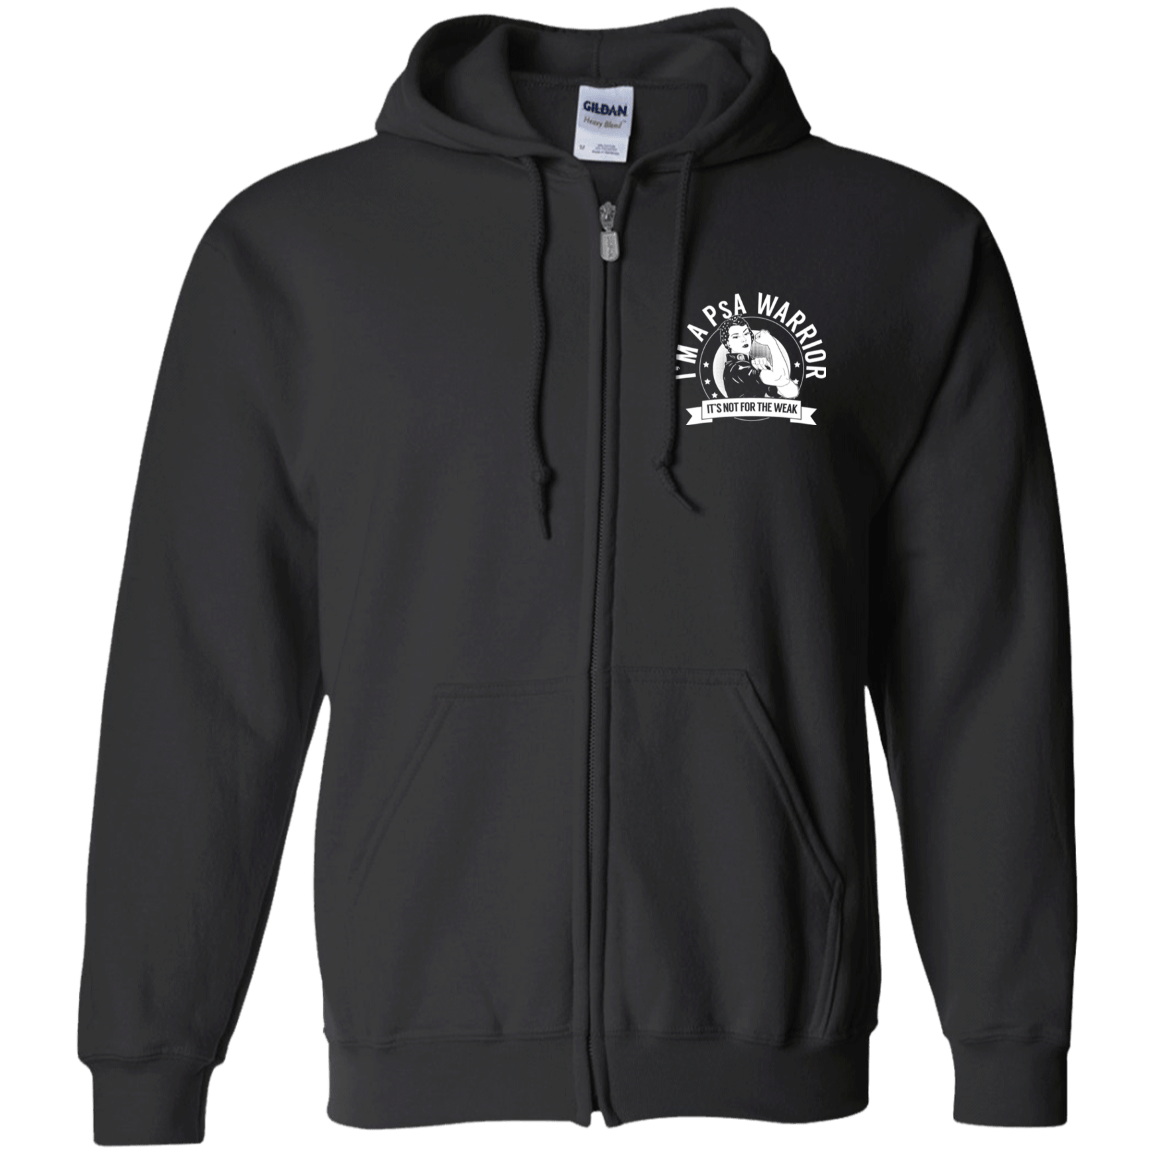 Psoriatic Arthritis - PsA Warrior NFTW Zip Up Hooded Sweatshirt - The Unchargeables